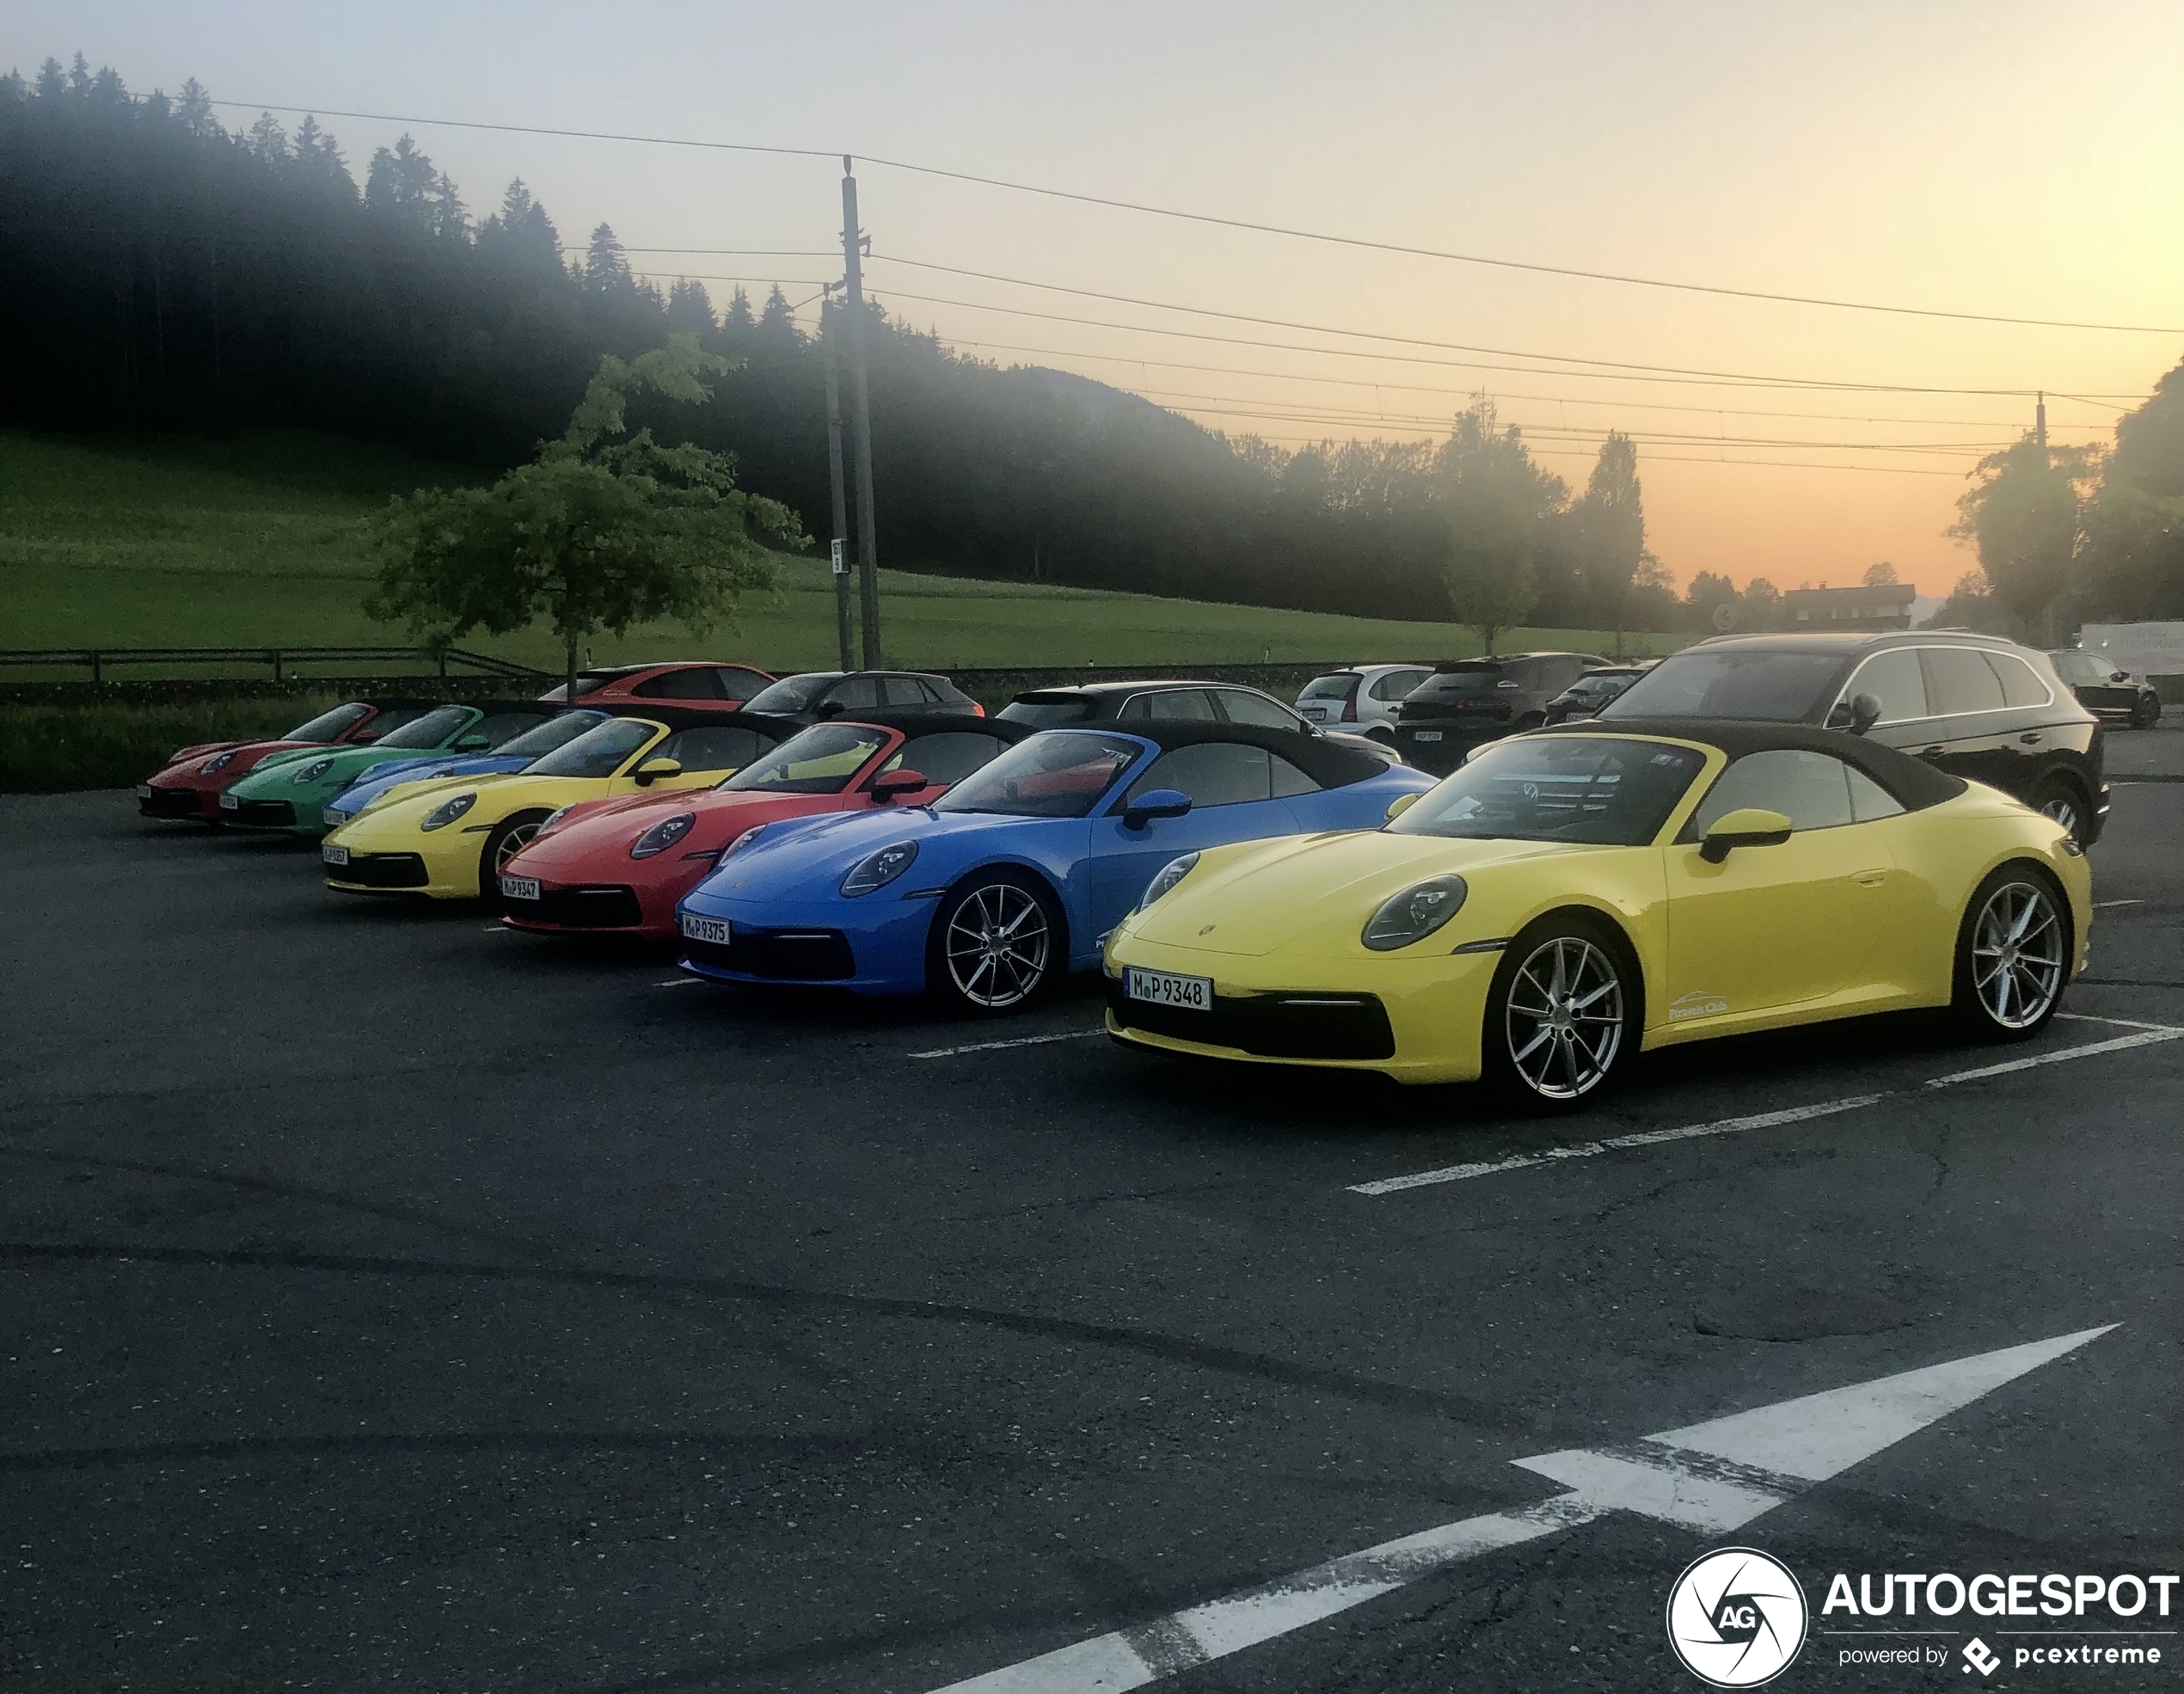 Welk kleurtje Porsche kies jij dit keer?